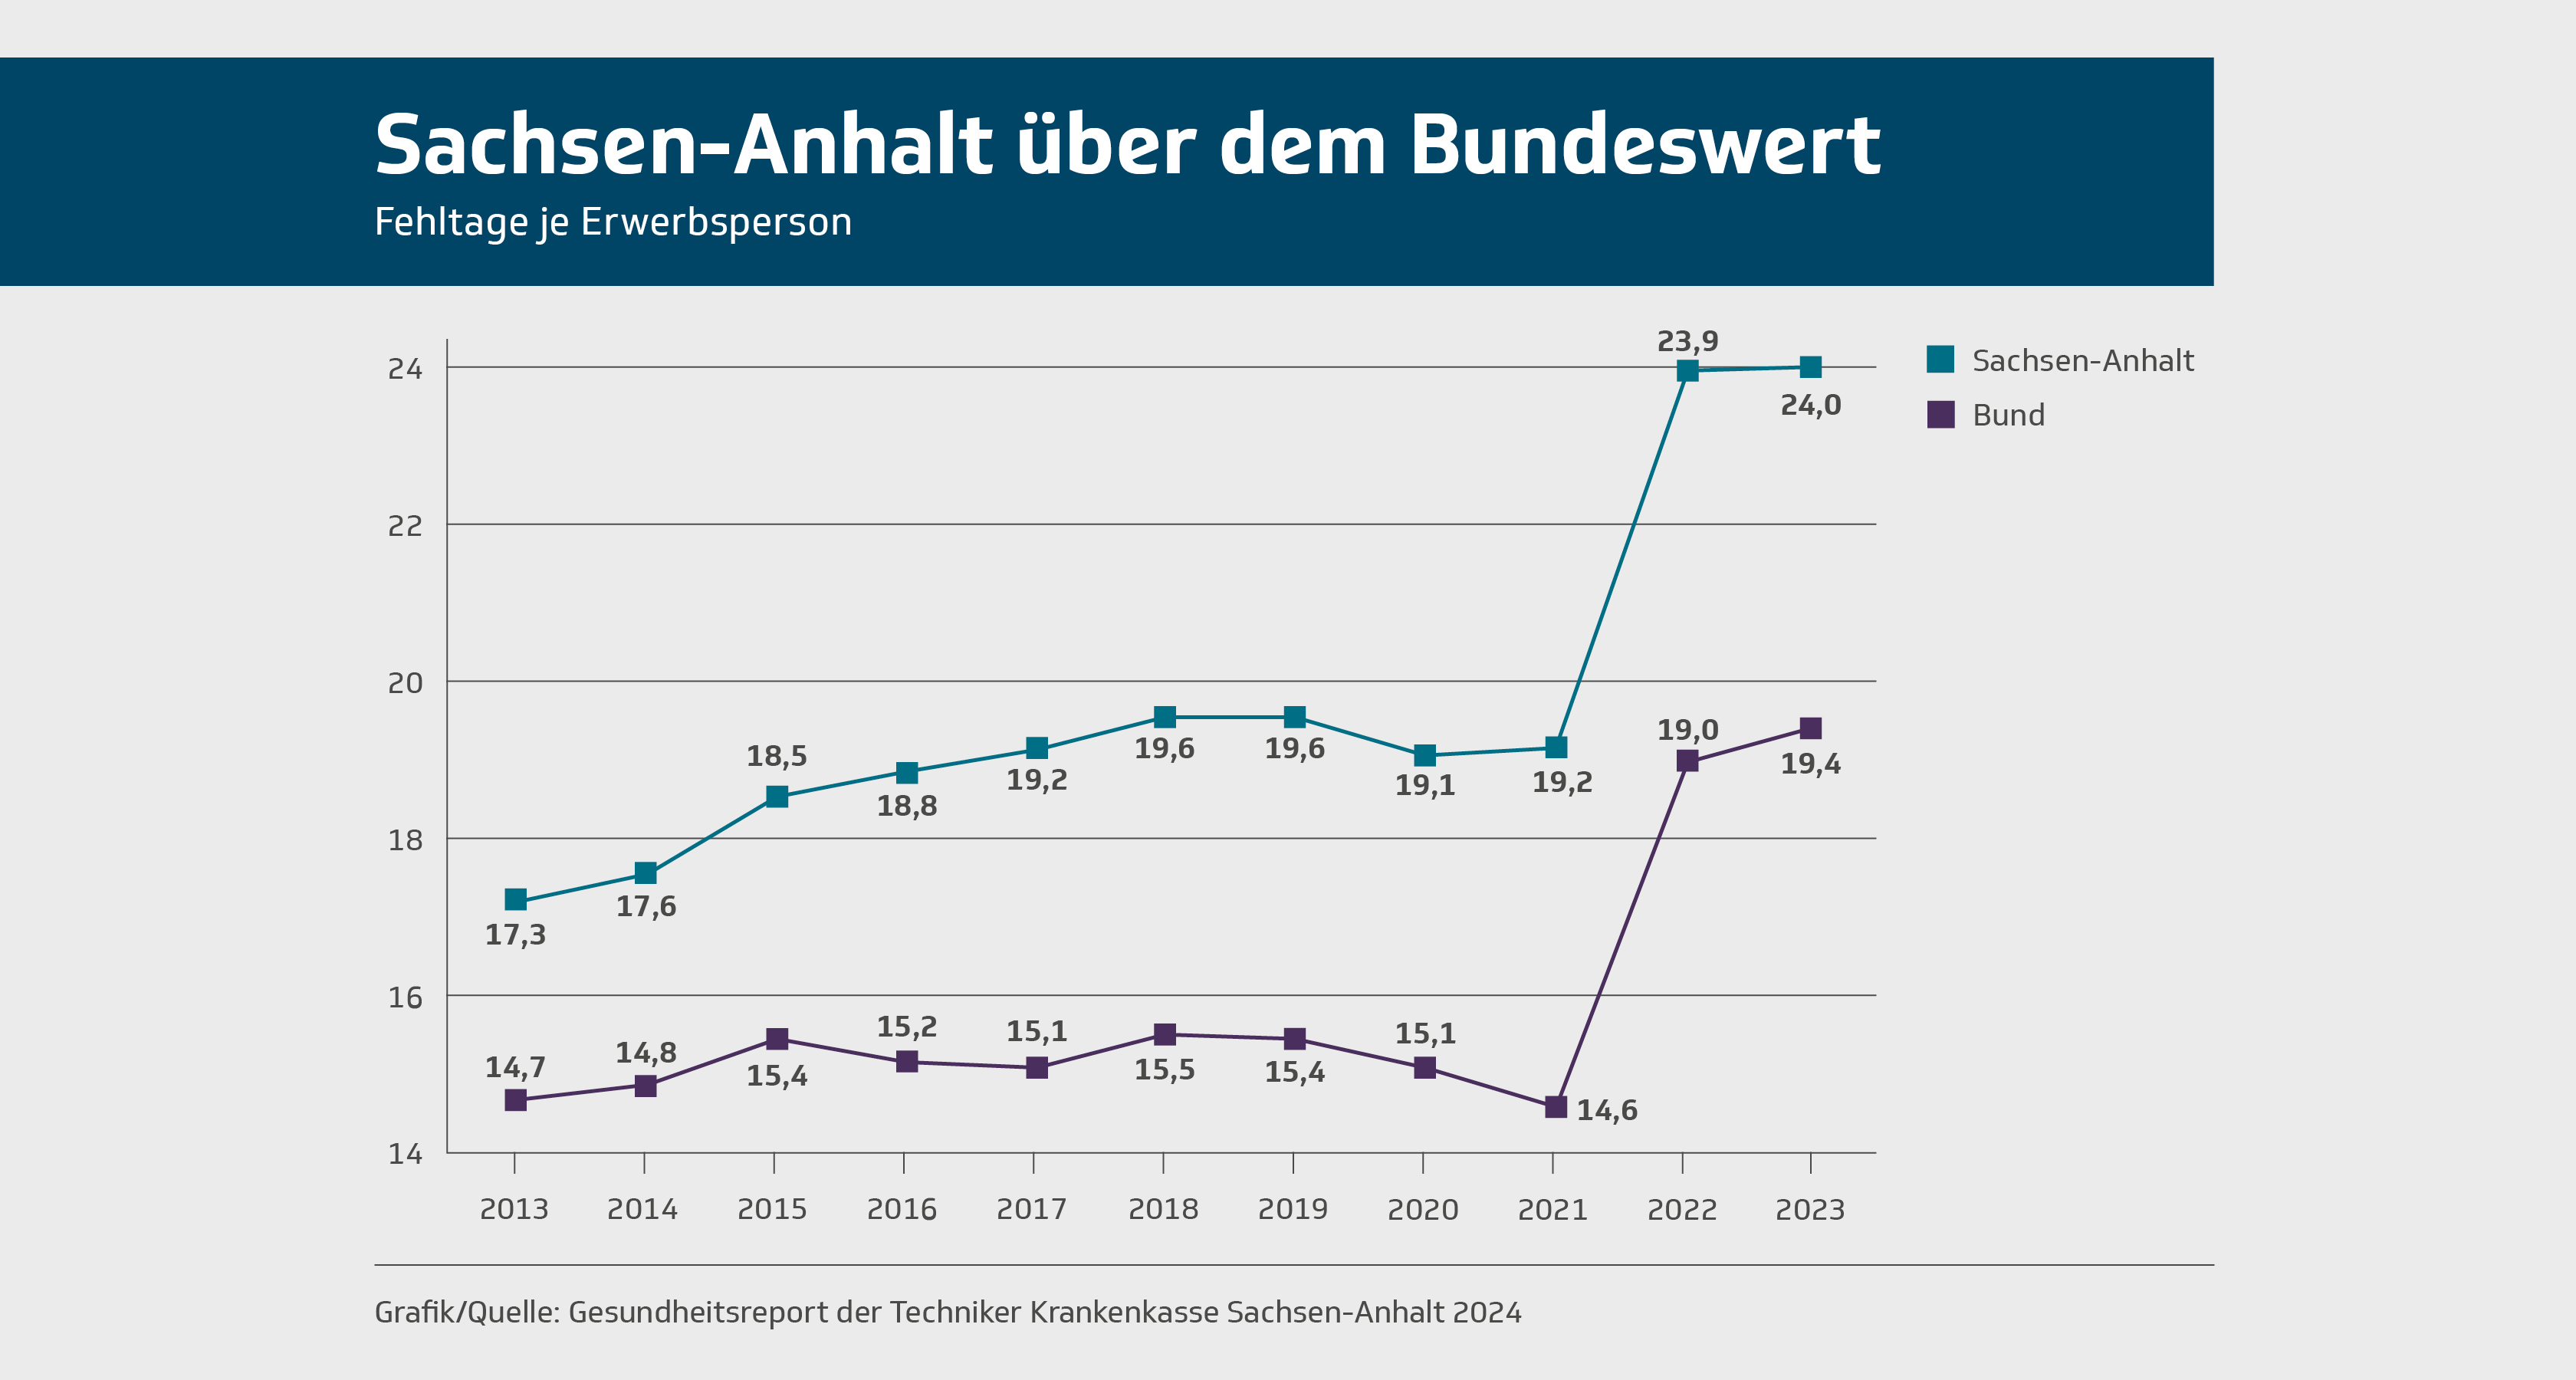 Infografik: Erwerbspersonen in Sachsen-Anhalt fehlen häufiger als im Bundesdurchschnitt. Quelle: TK.